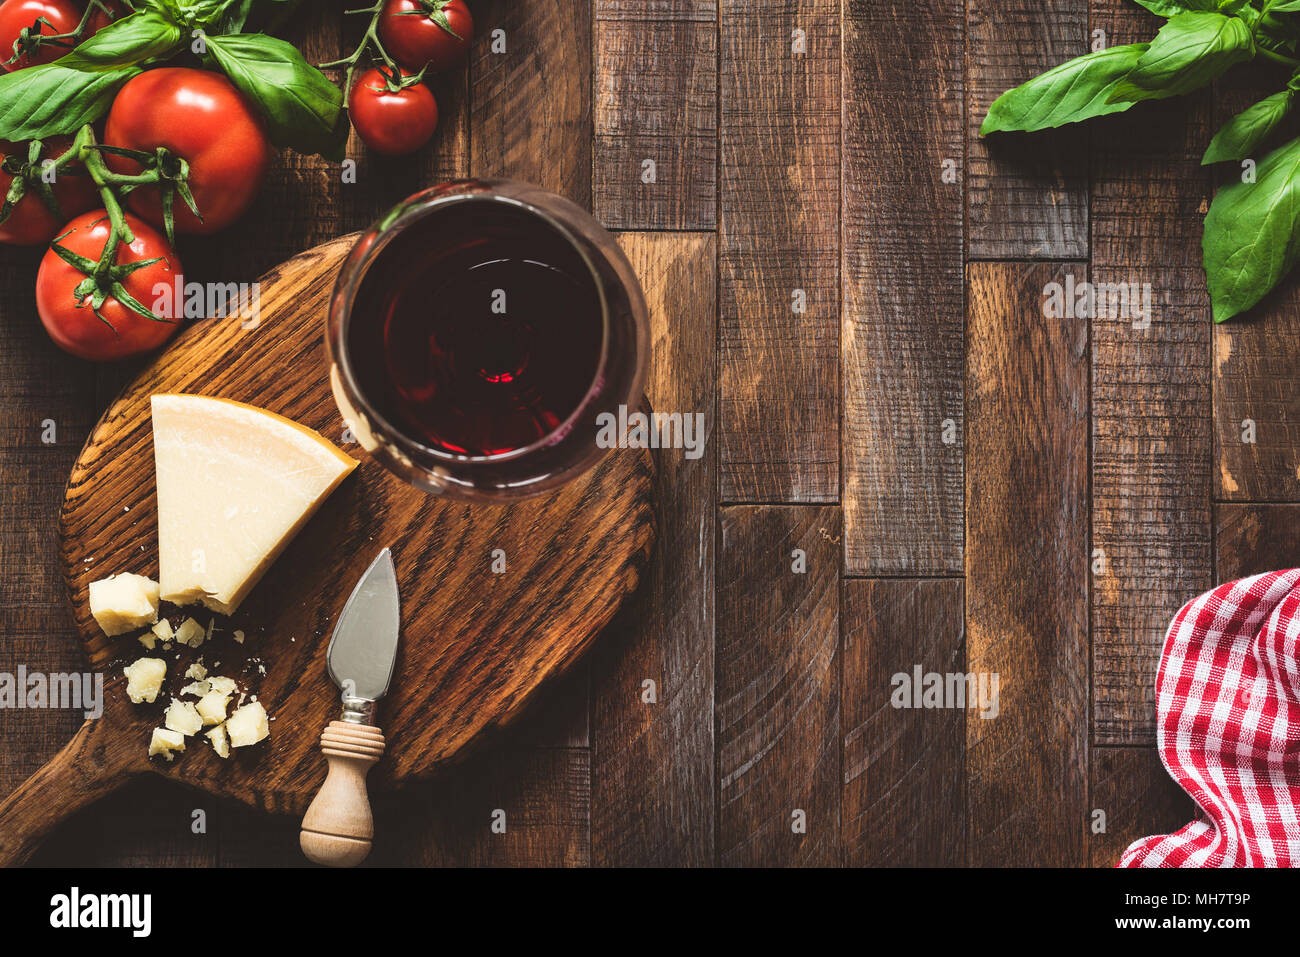 Le fromage parmesan, tomates, basilic et verre de vin rouge. Cuisine italienne. Cuisine italienne rustique sur fond de bois. Le fromage et le vin. Vue d'en haut Banque D'Images